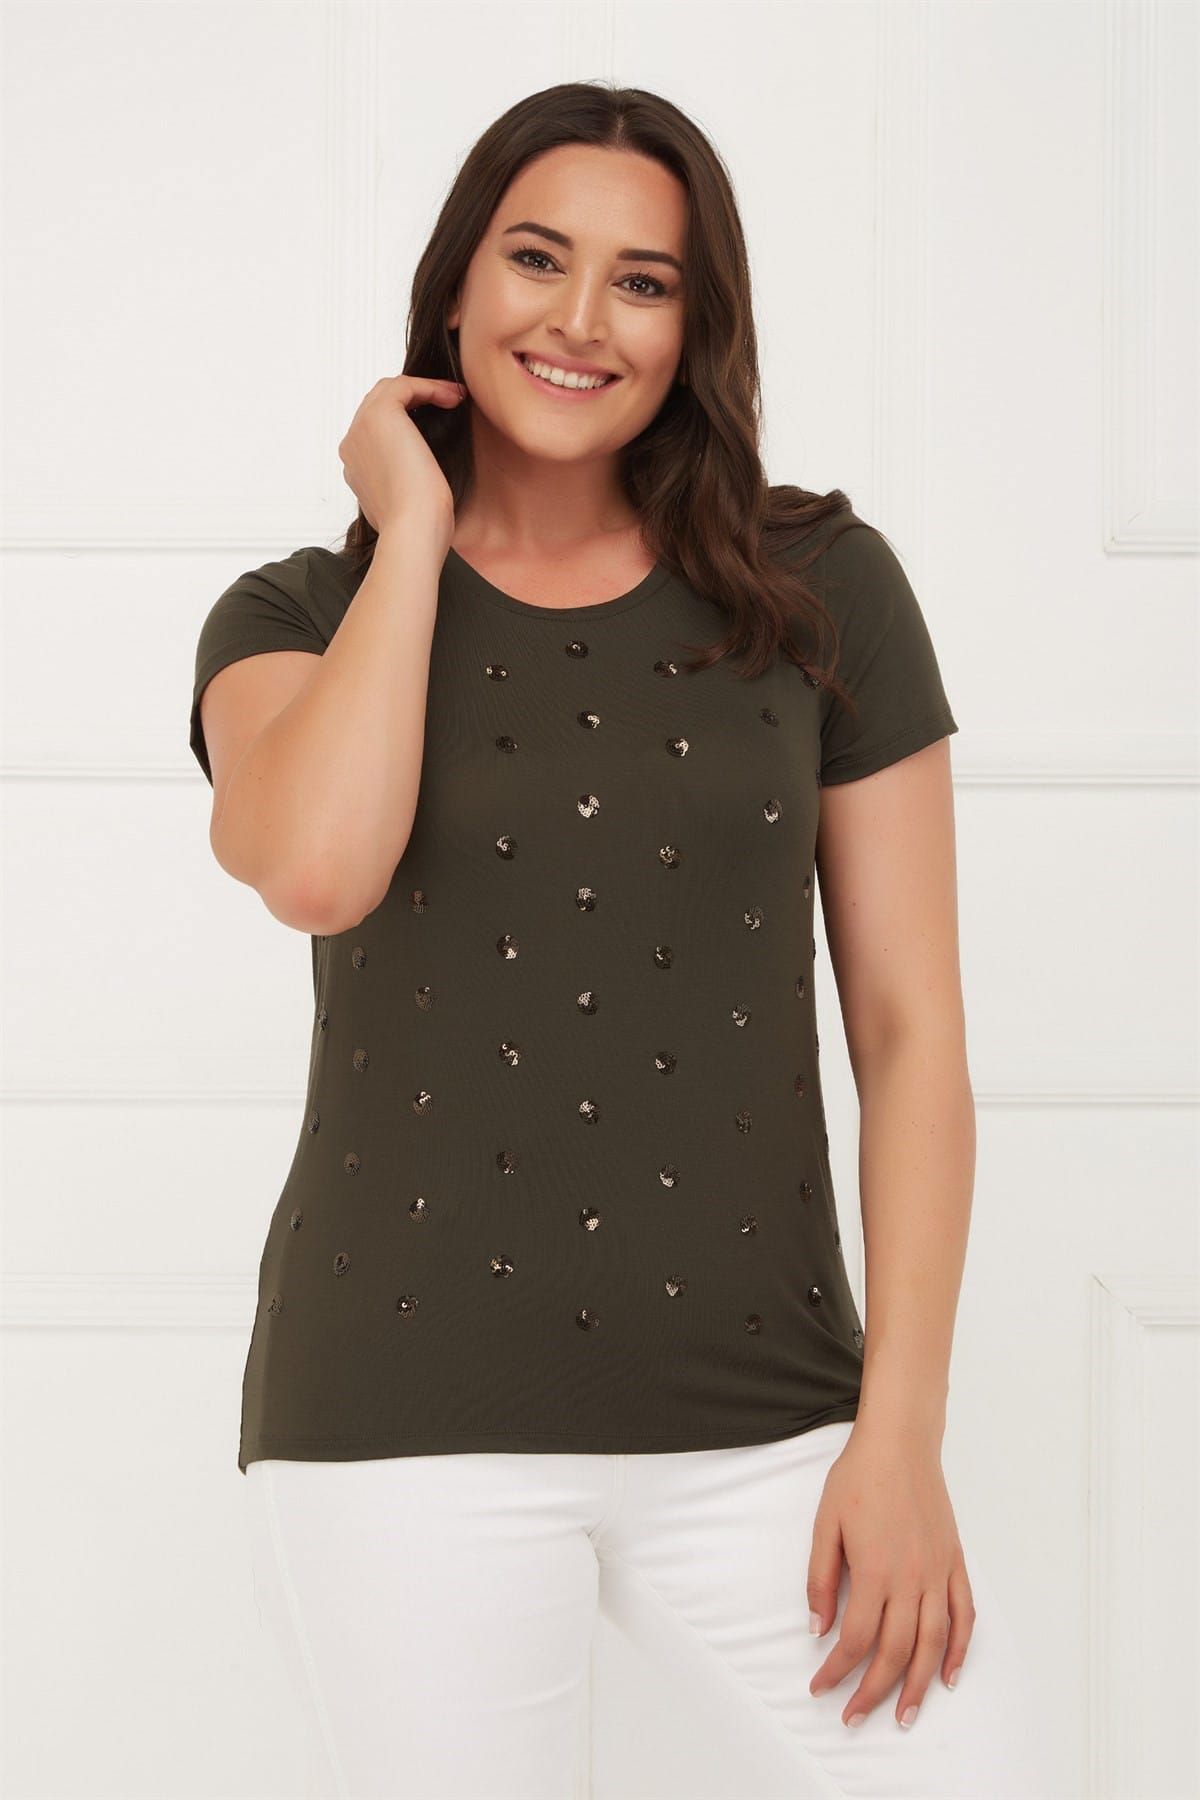 Seamoda Kadın  Önü Payet Nakışlı Basıc T-shirt  PRA-256453-528020